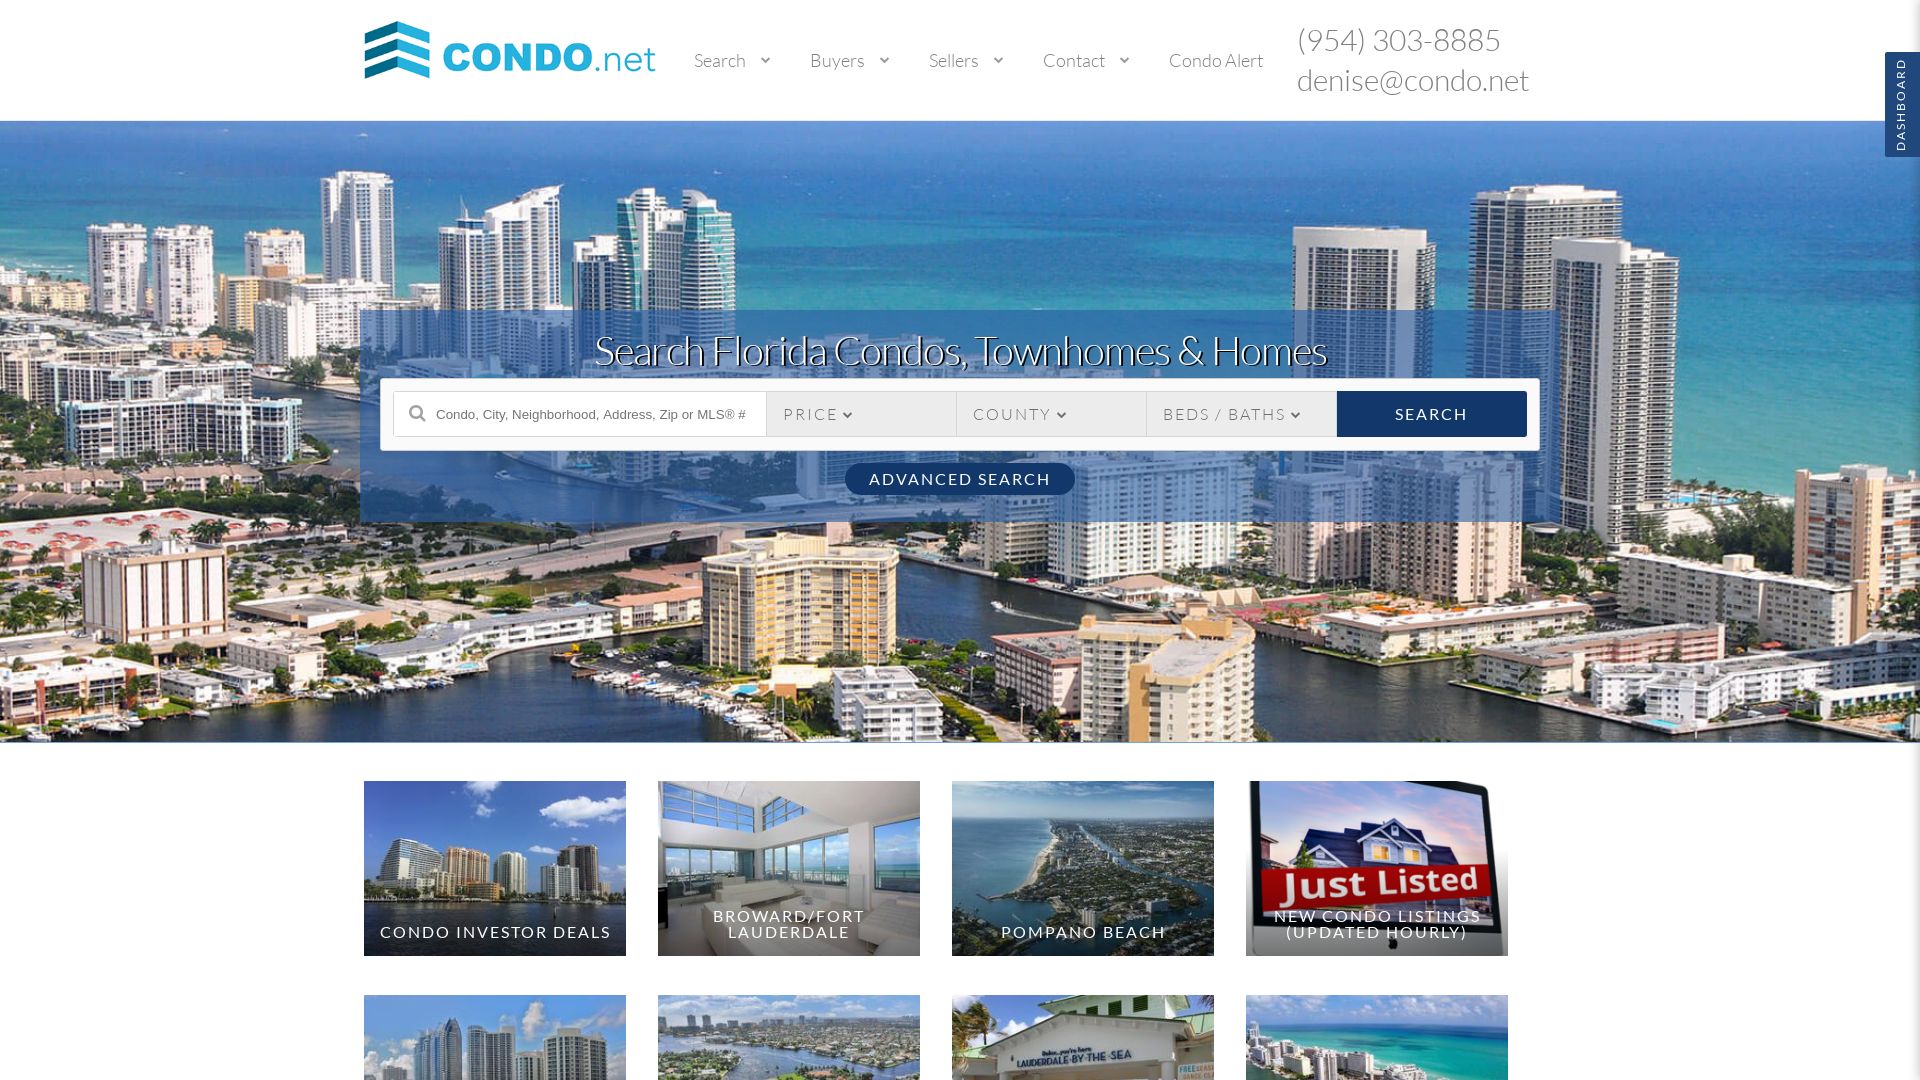 网站状态 condo.net 是  在线的